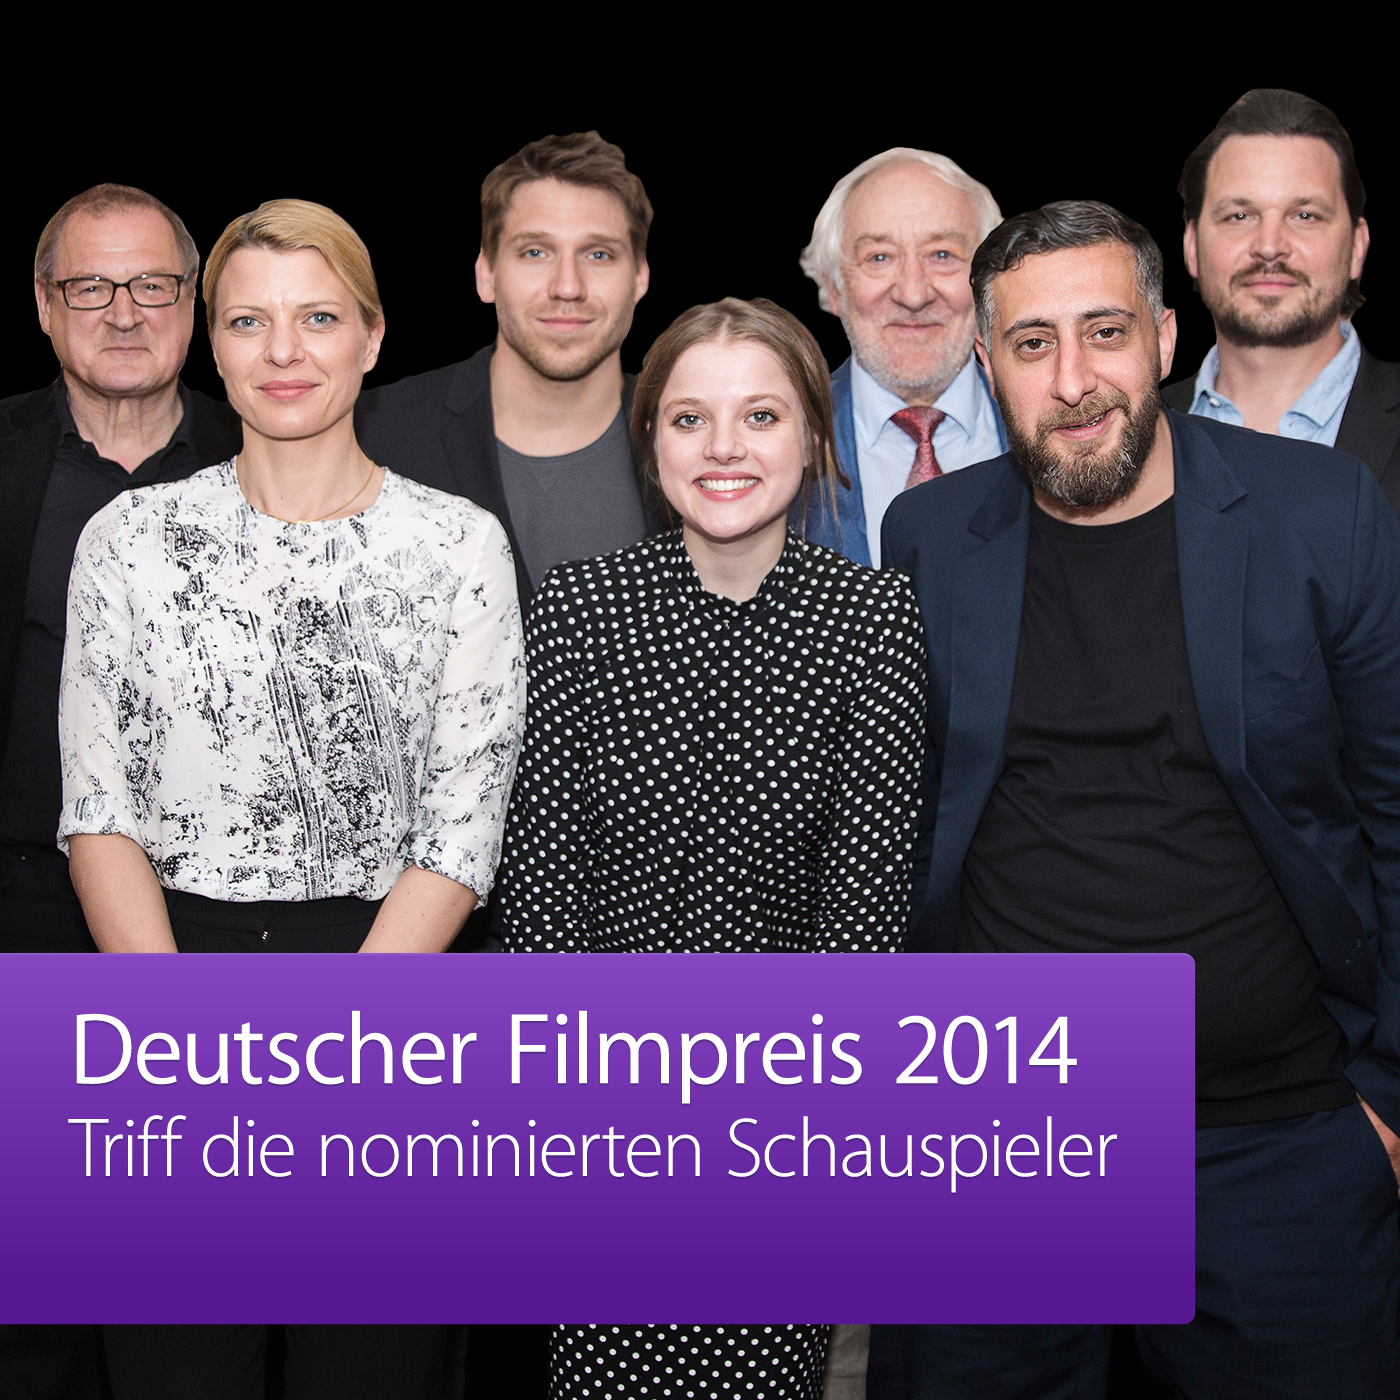 Deutscher Filmpreis 2014: Triff die nominierten Schauspieler